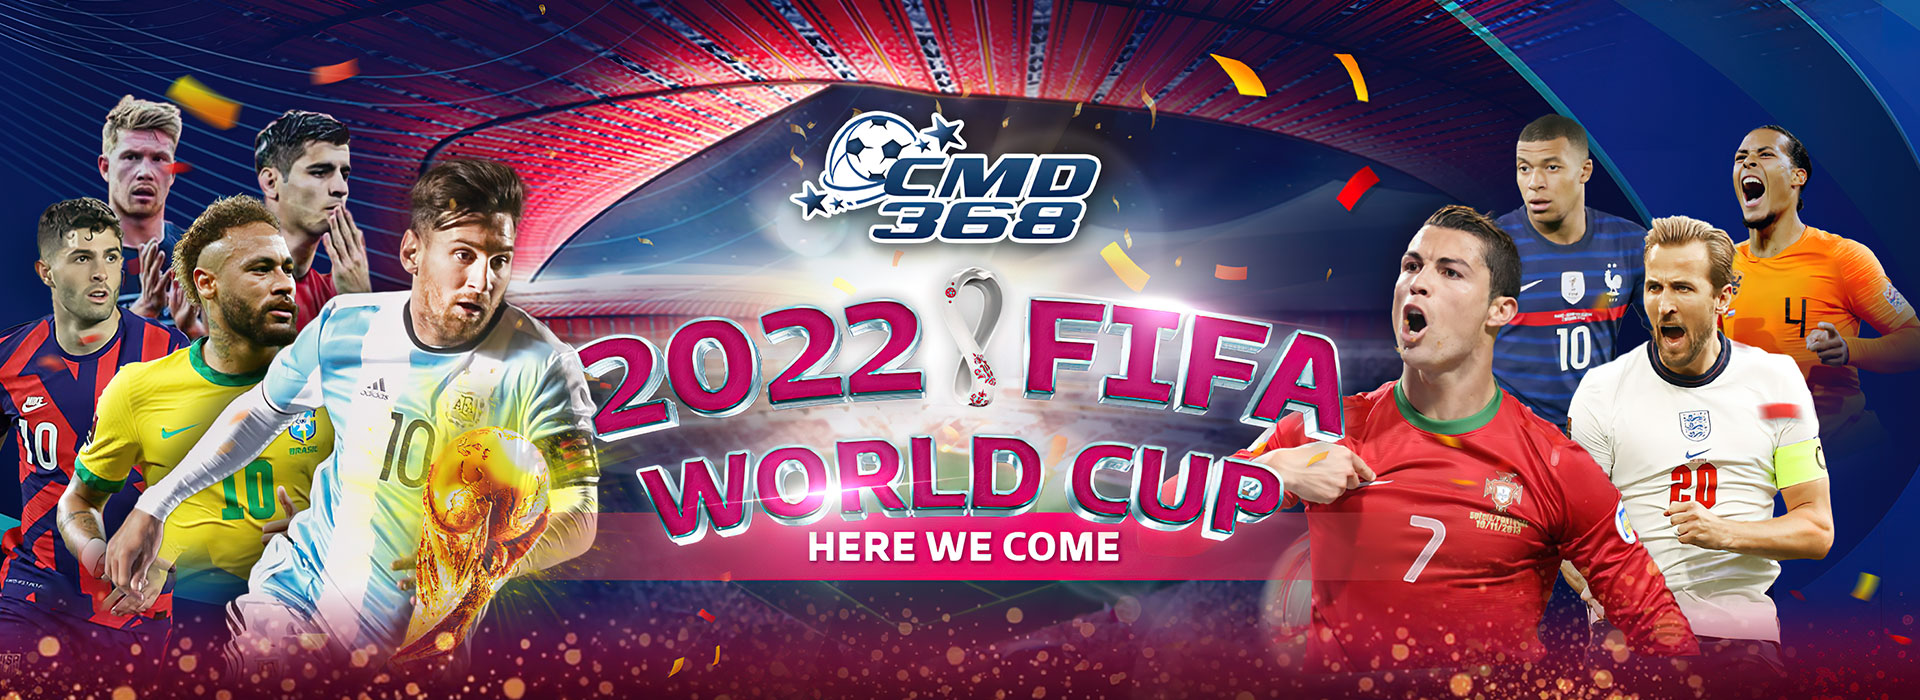 CMD worldcup lucky bonus challenge Web Banner - GamingSoft